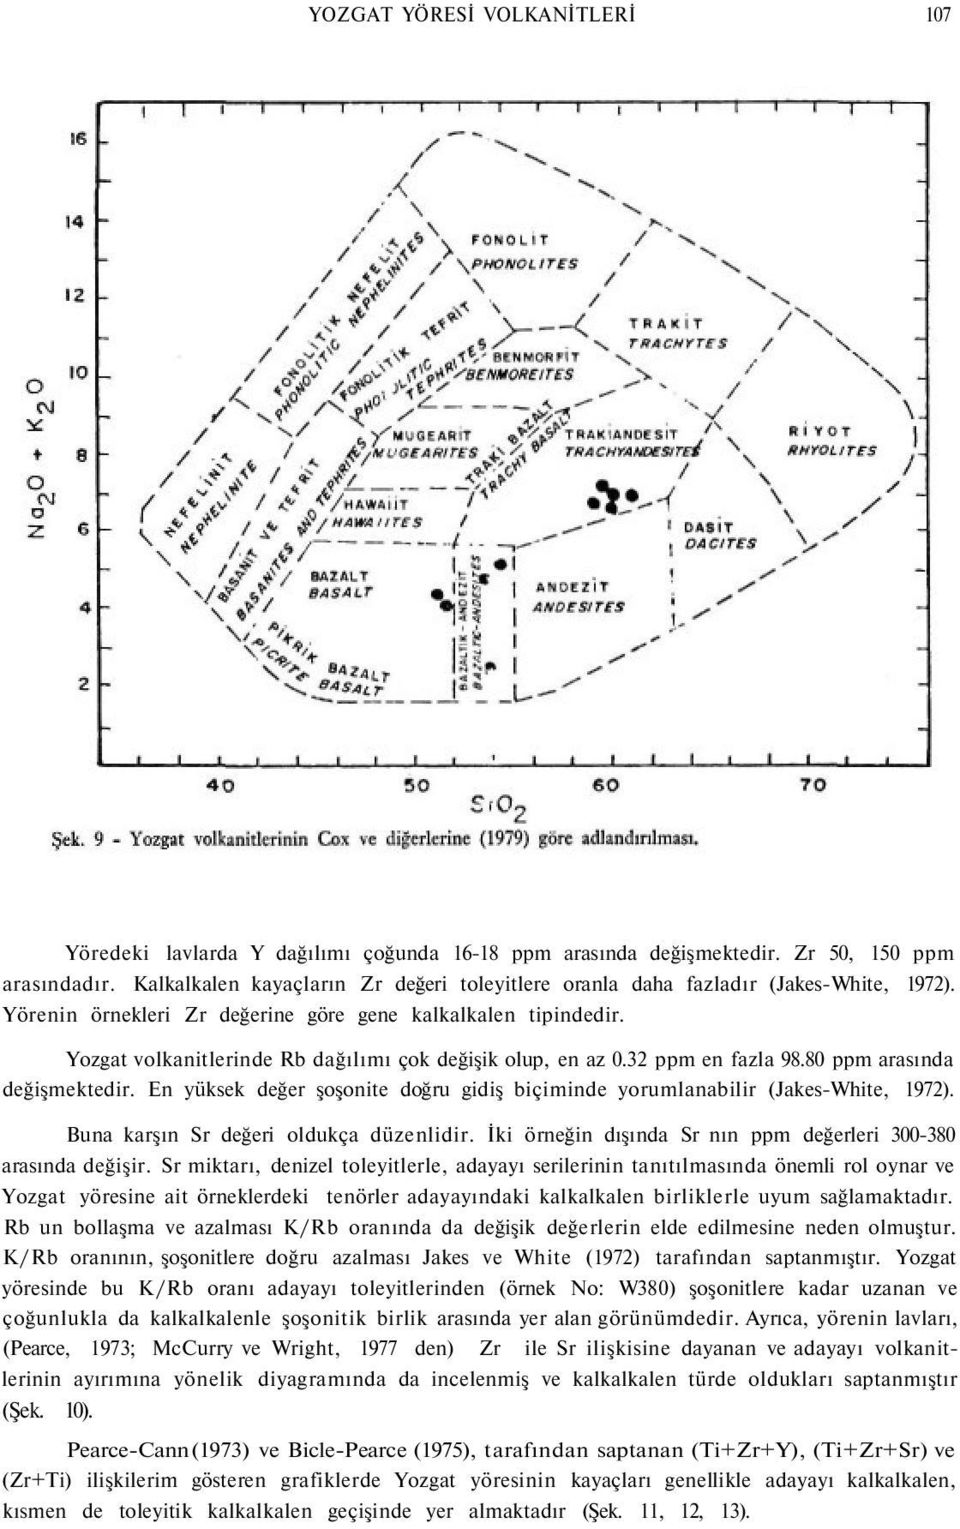 Yozgat volkanitlerinde Rb dağılımı çok değişik olup, en az 0.32 ppm en fazla 98.80 ppm arasında değişmektedir. En yüksek değer şoşonite doğru gidiş biçiminde yorumlanabilir (Jakes-White, 1972).